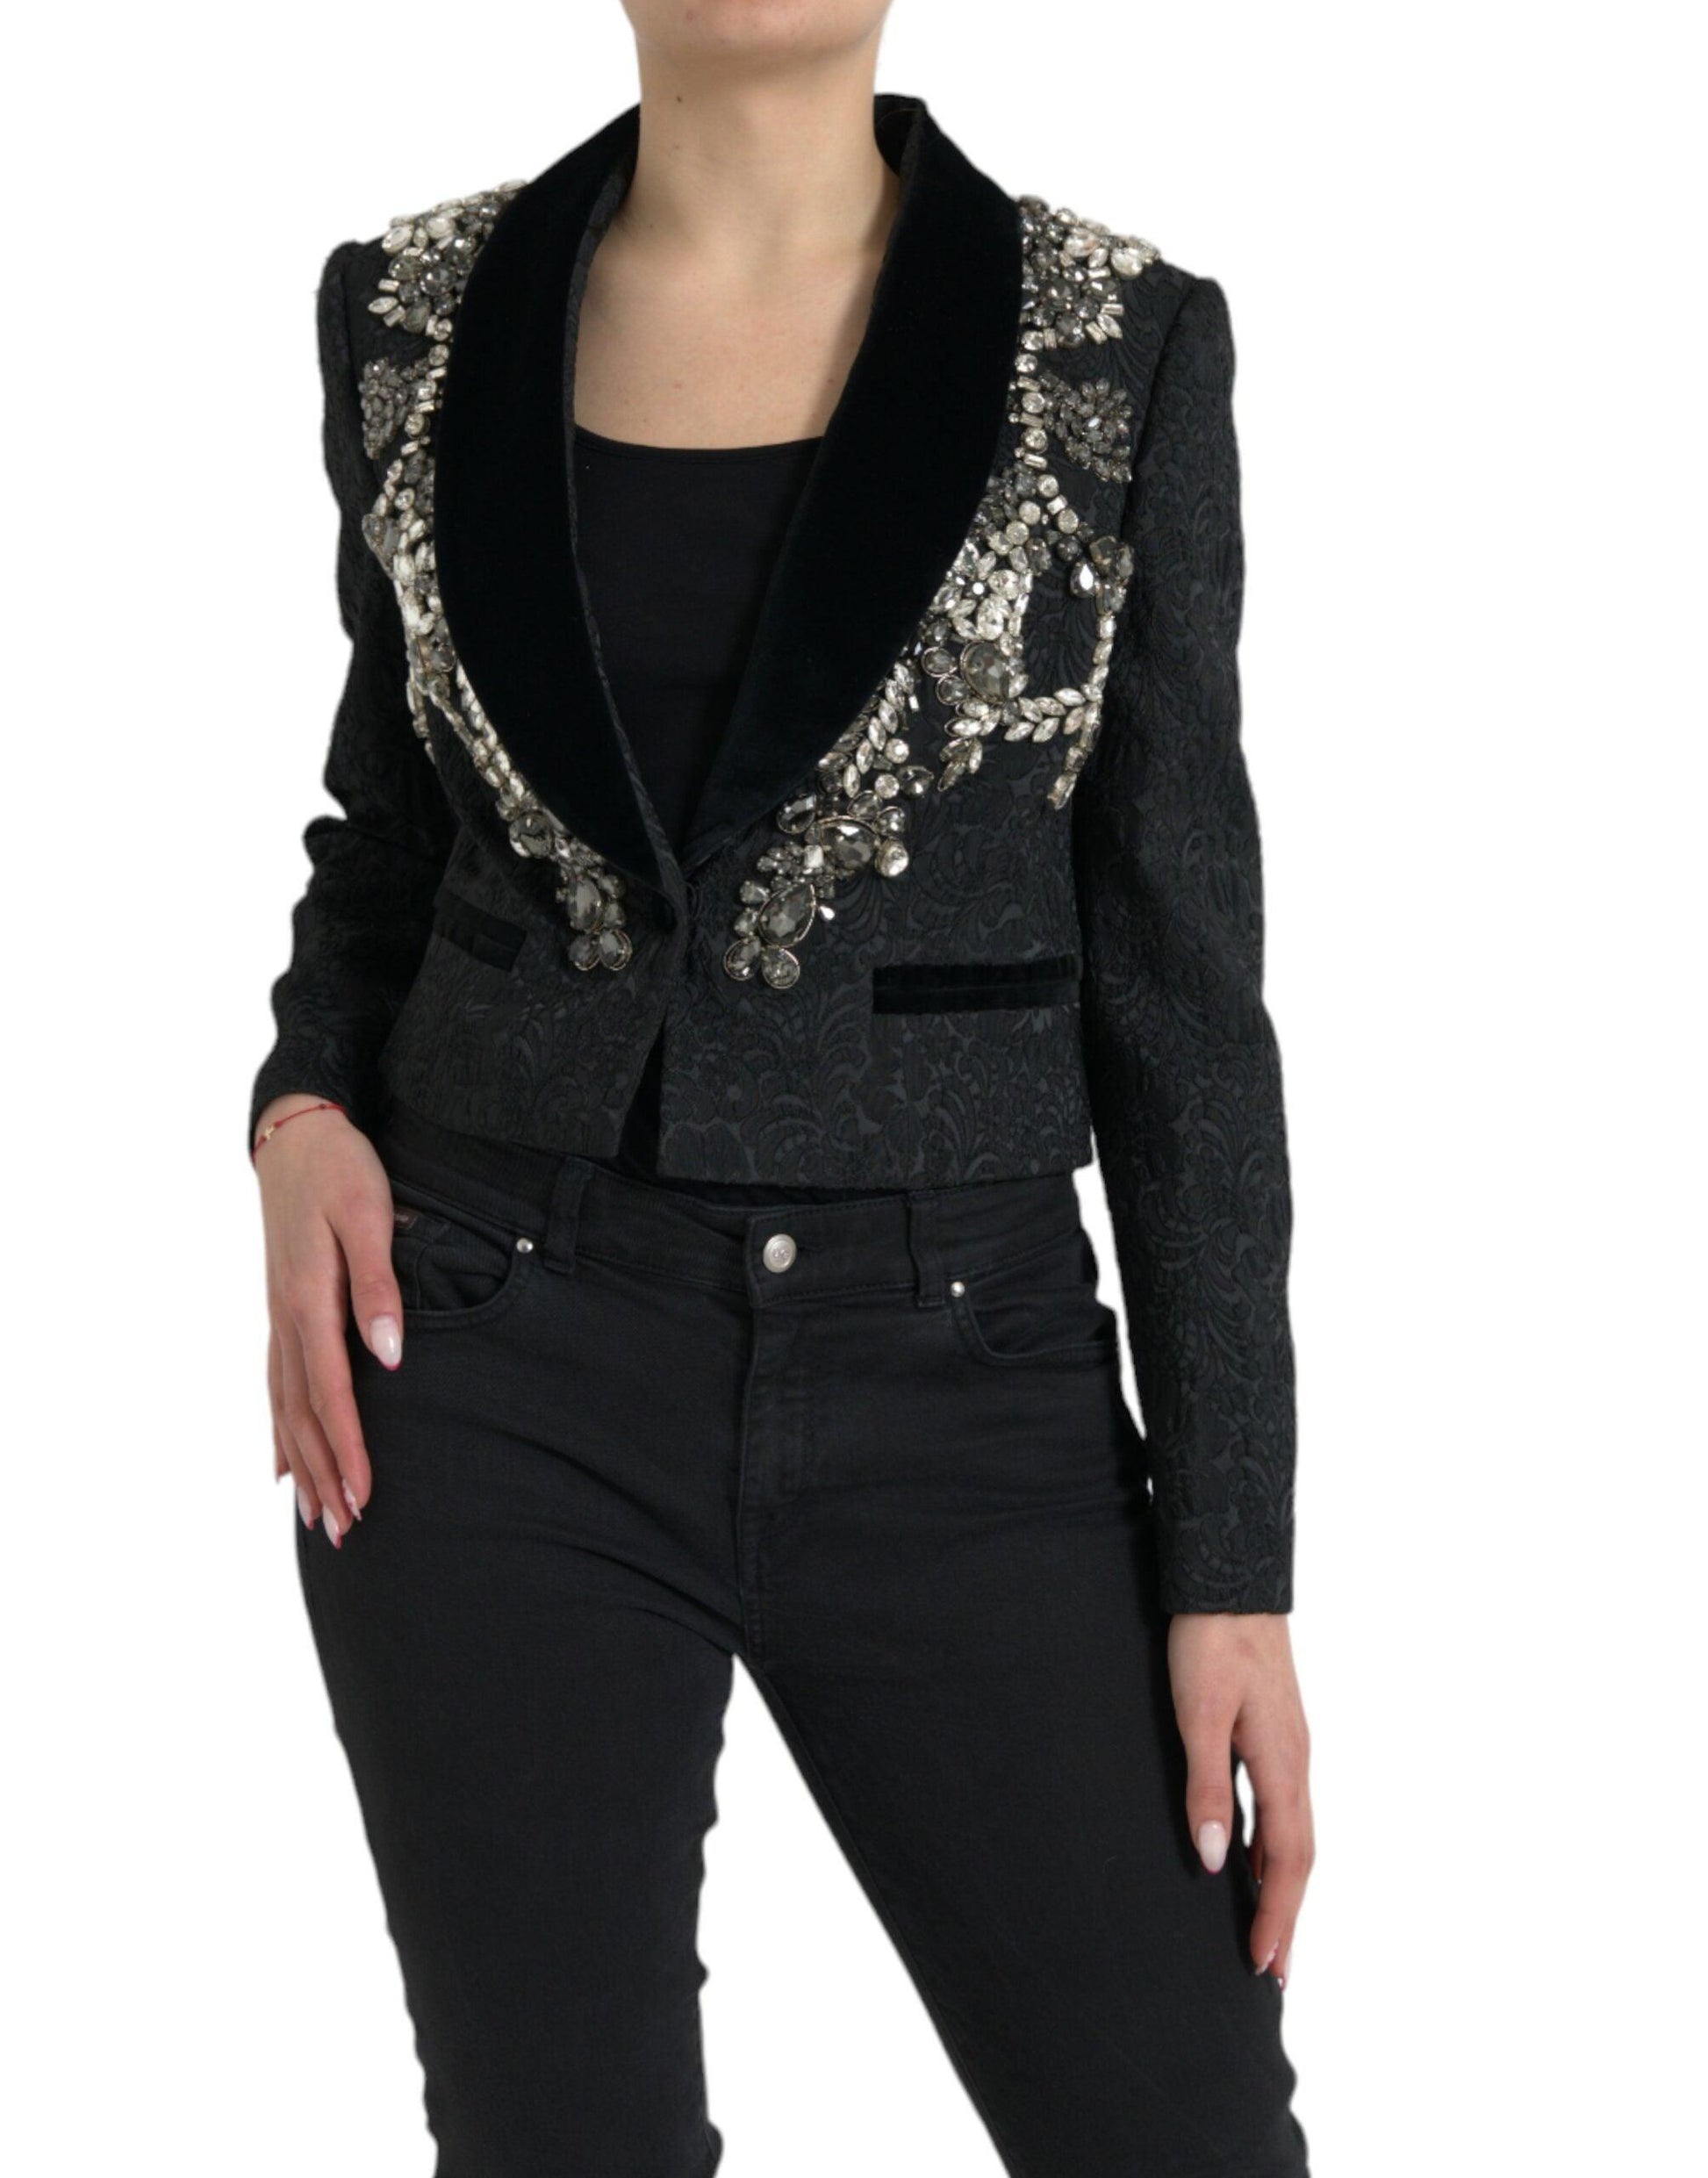 Dolce & Gabbana Elegant Embellished Black Overcoat Jacket - PER.FASHION